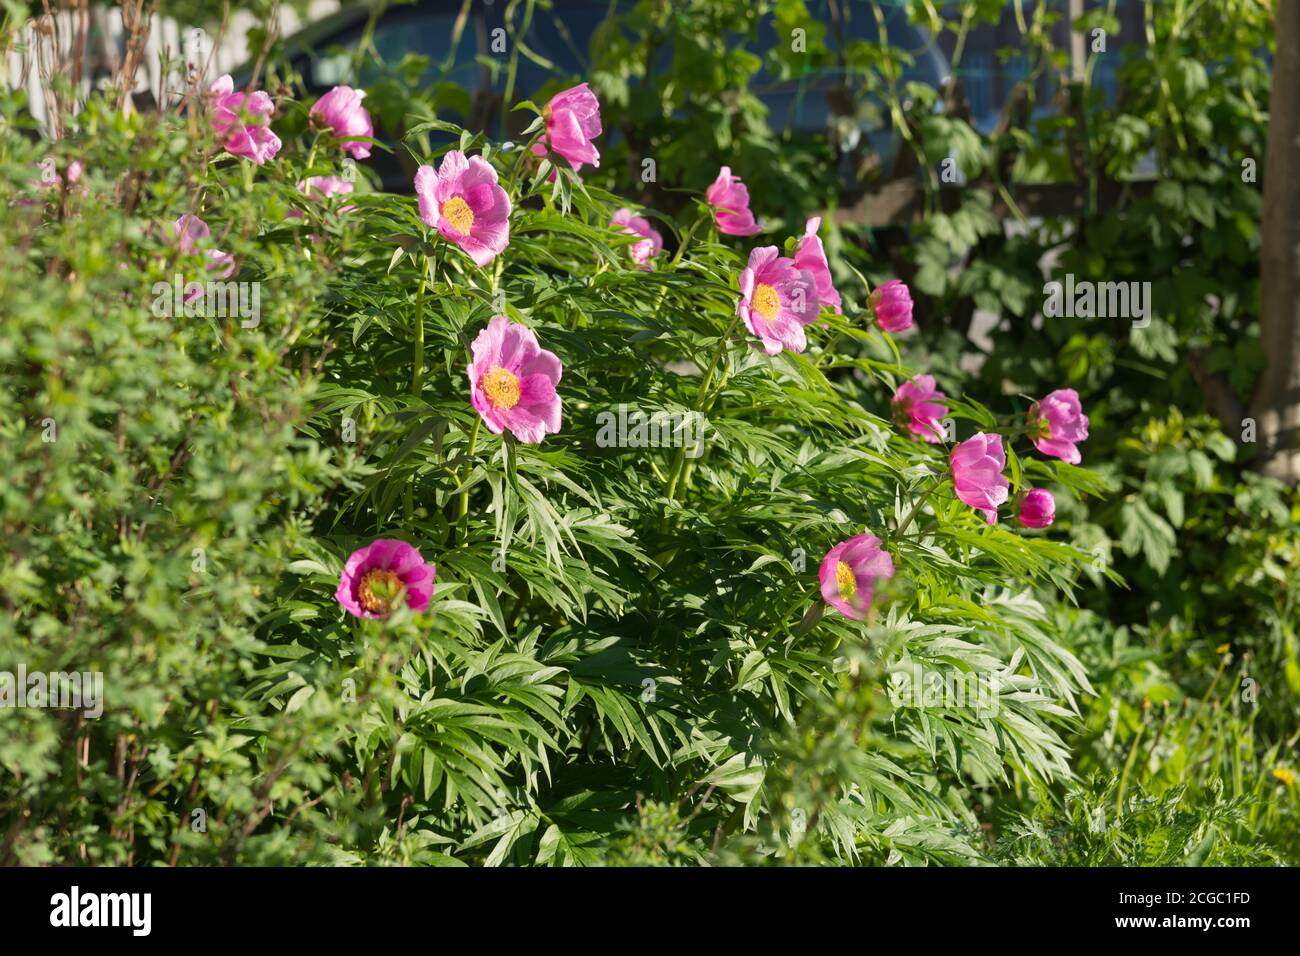 Grande cespuglio di una semplice peonia rosa selvatica della radice di Maryin (lat. Paeonia anomala) fiorisce nel giardino. Foto Stock